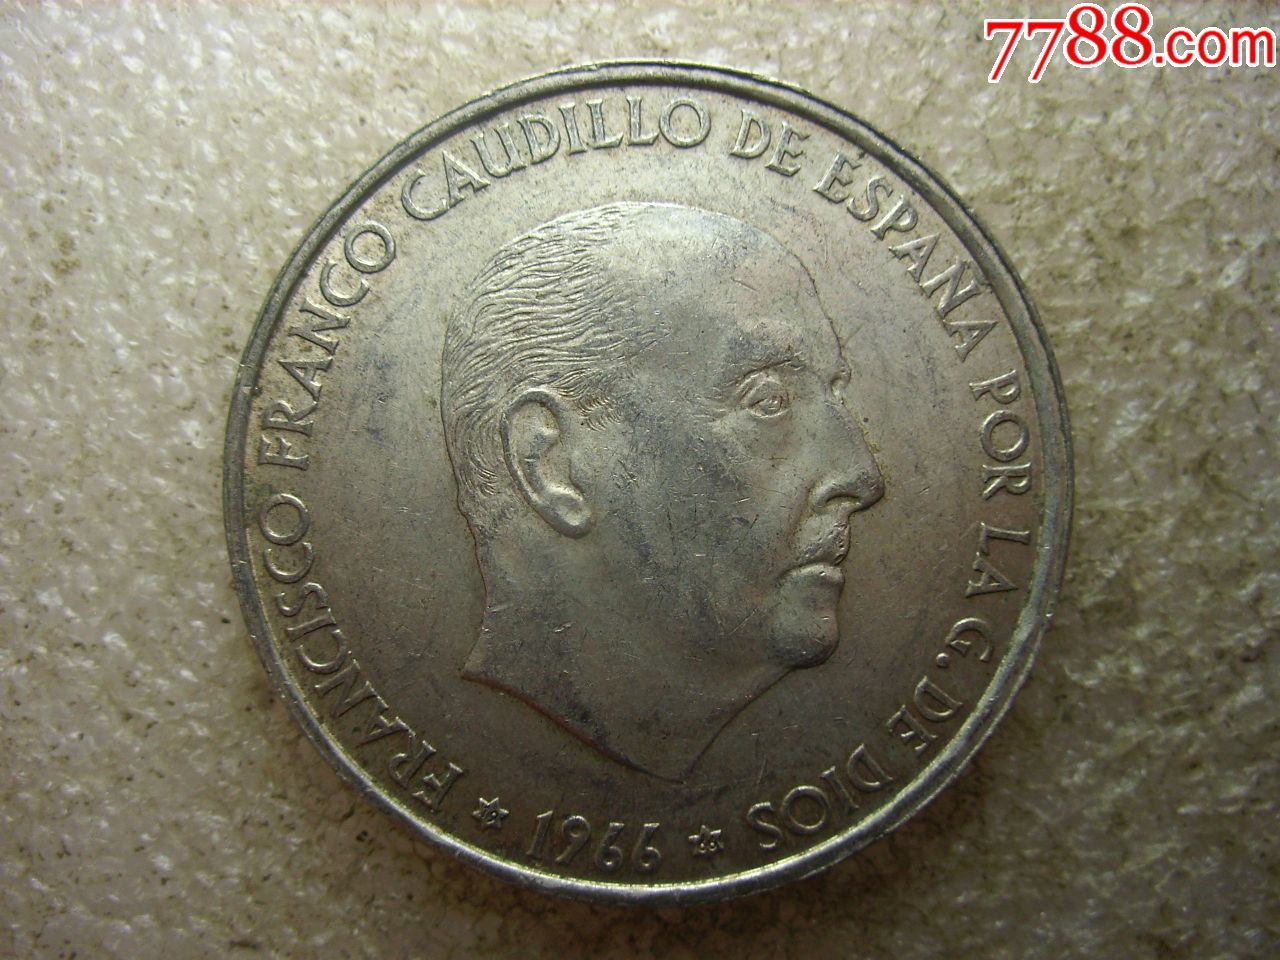 原味美品1966西班牙弗朗哥大银币